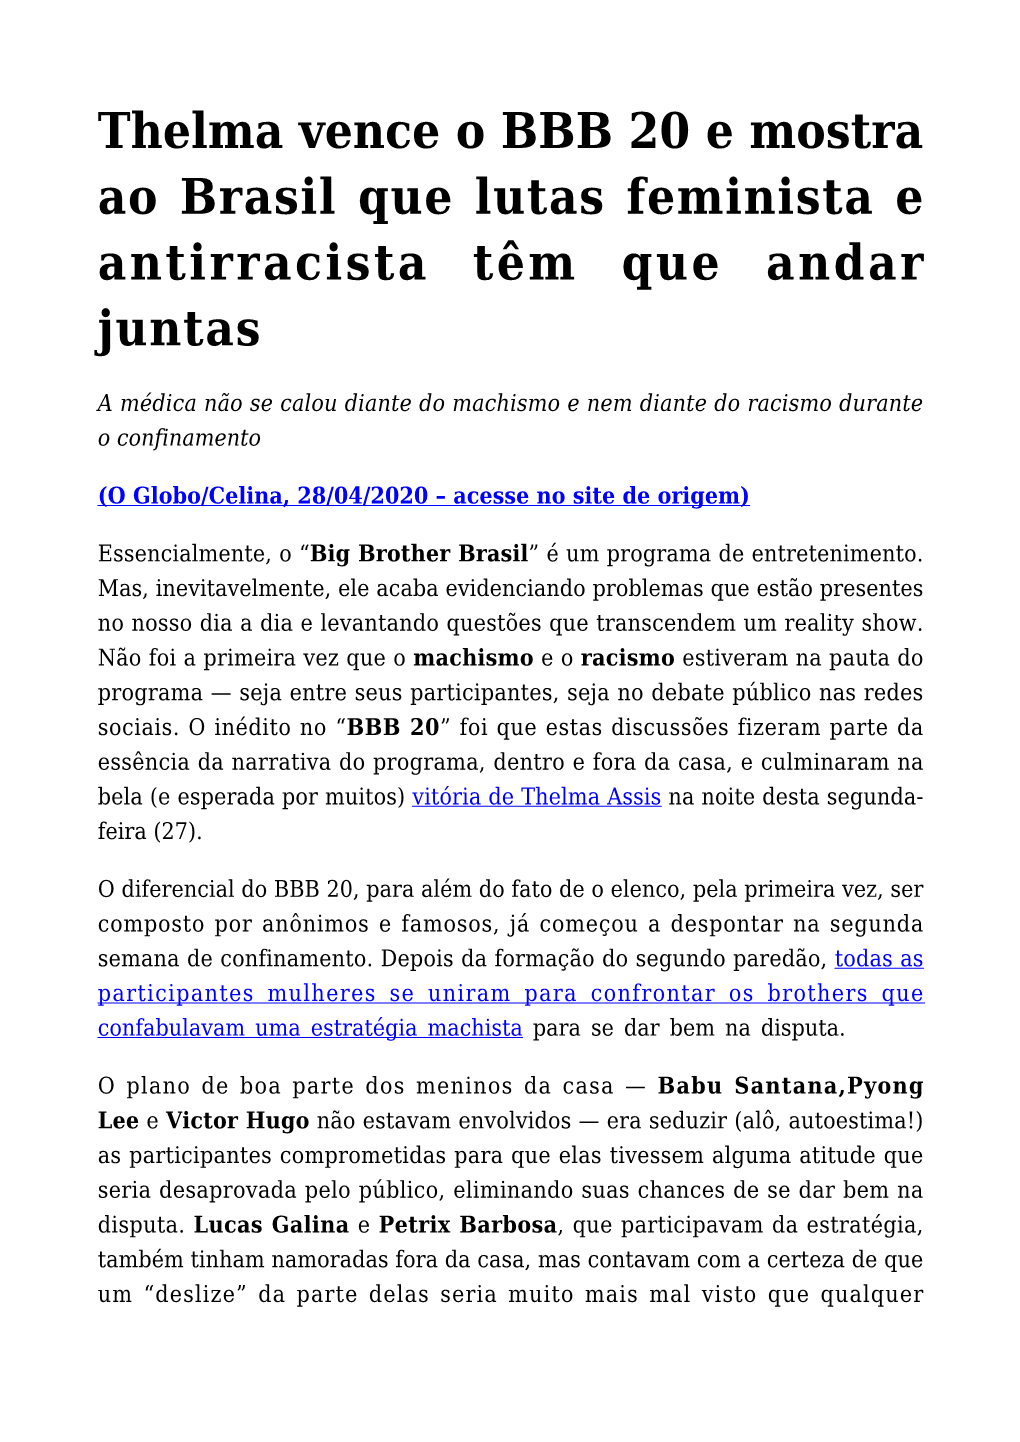 Thelma Vence O BBB 20 E Mostra Ao Brasil Que Lutas Feminista E Antirracista Têm Que Andar Juntas